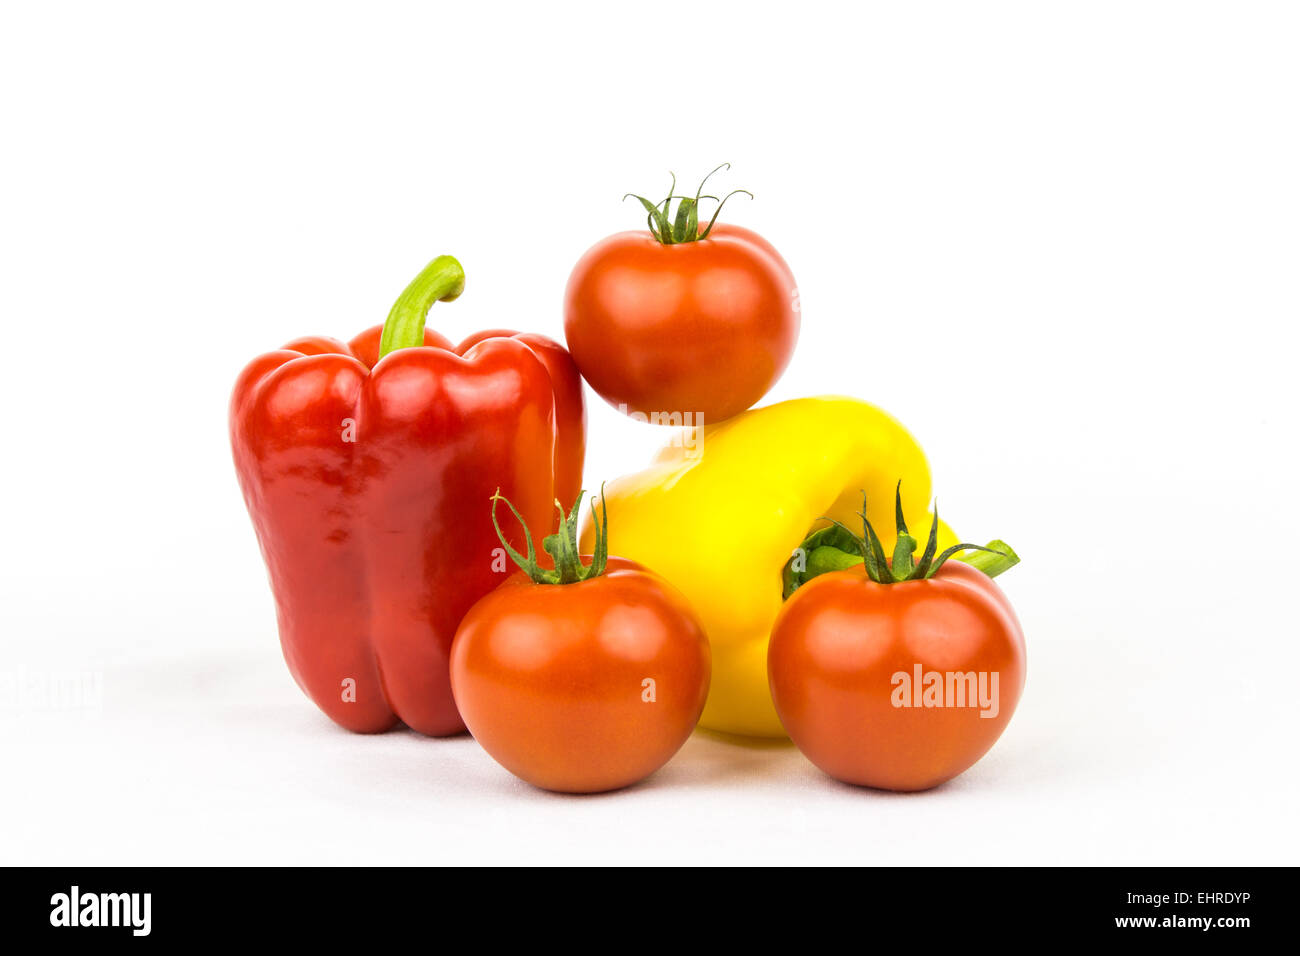 Tomatoe and paprika Stock Photo